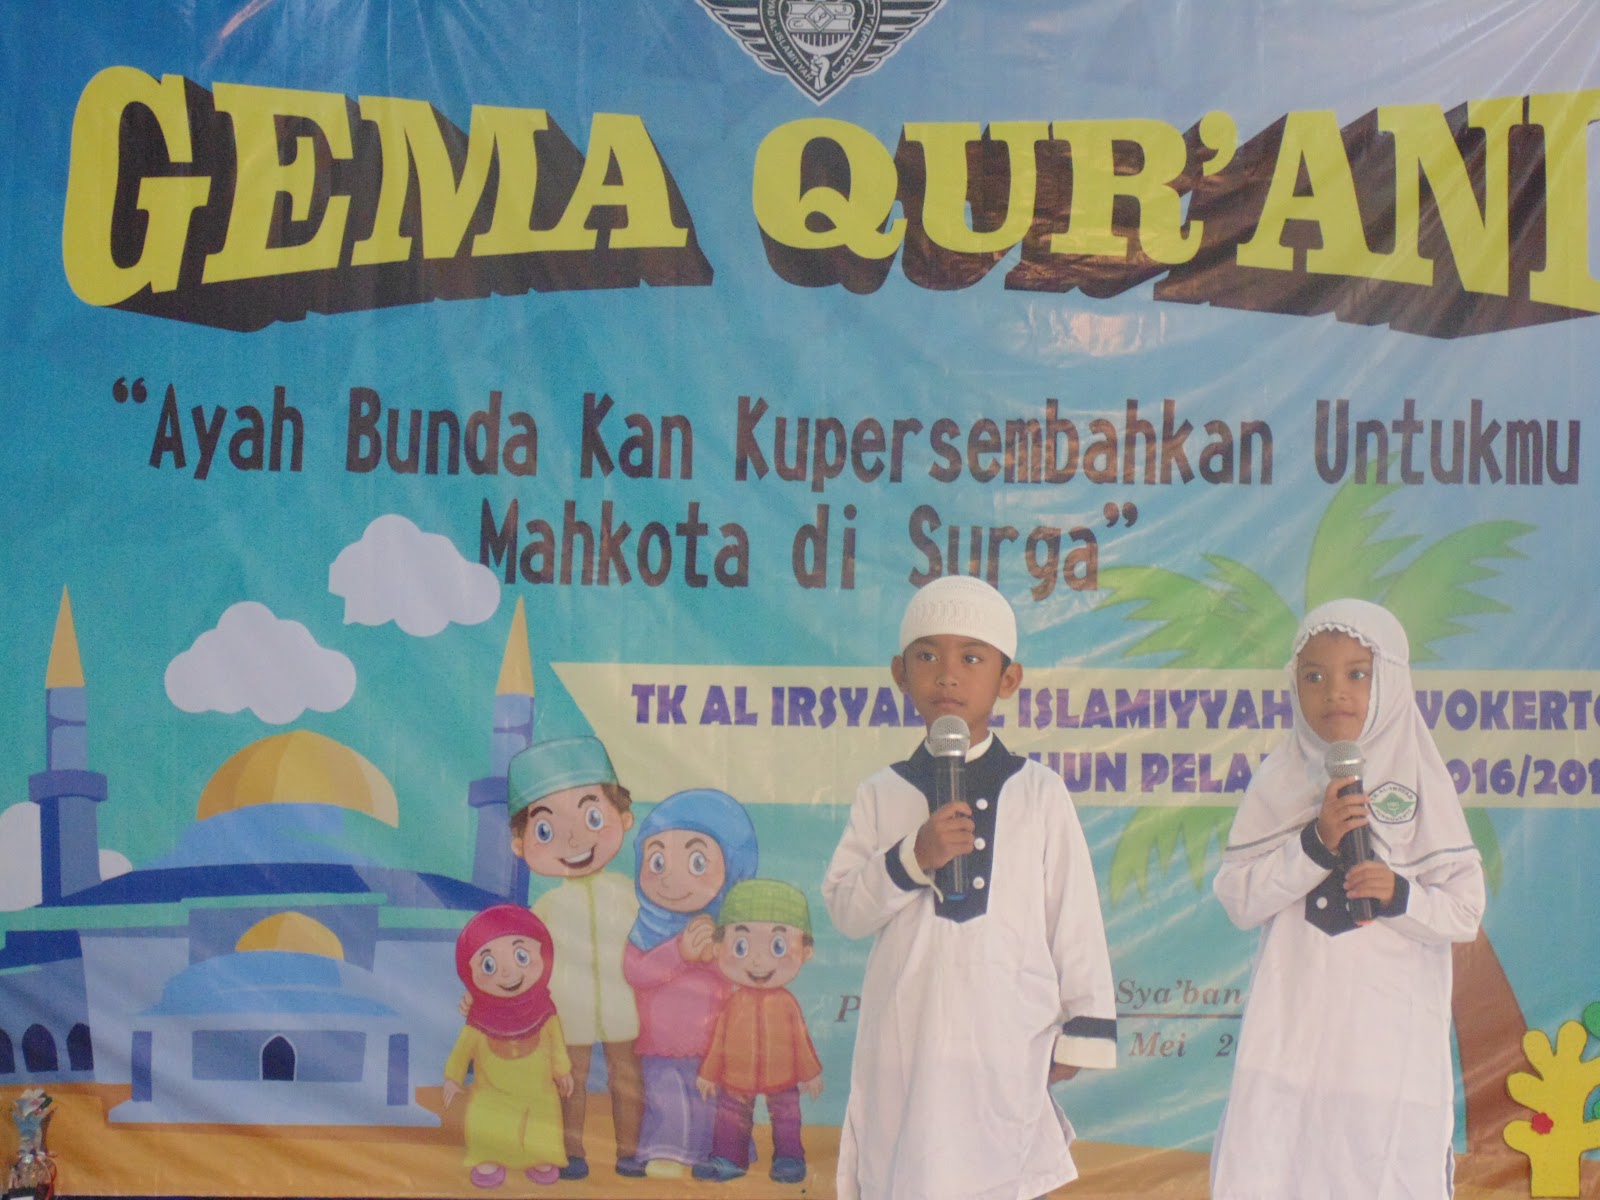 Sabtu 13 05 2017 TK A dan TK Al Irsyad mengikuti kegiatan Gema Qurani Acara berlangsung di Balai Desa Purwokerto Wetan dengan mengambil Tema “